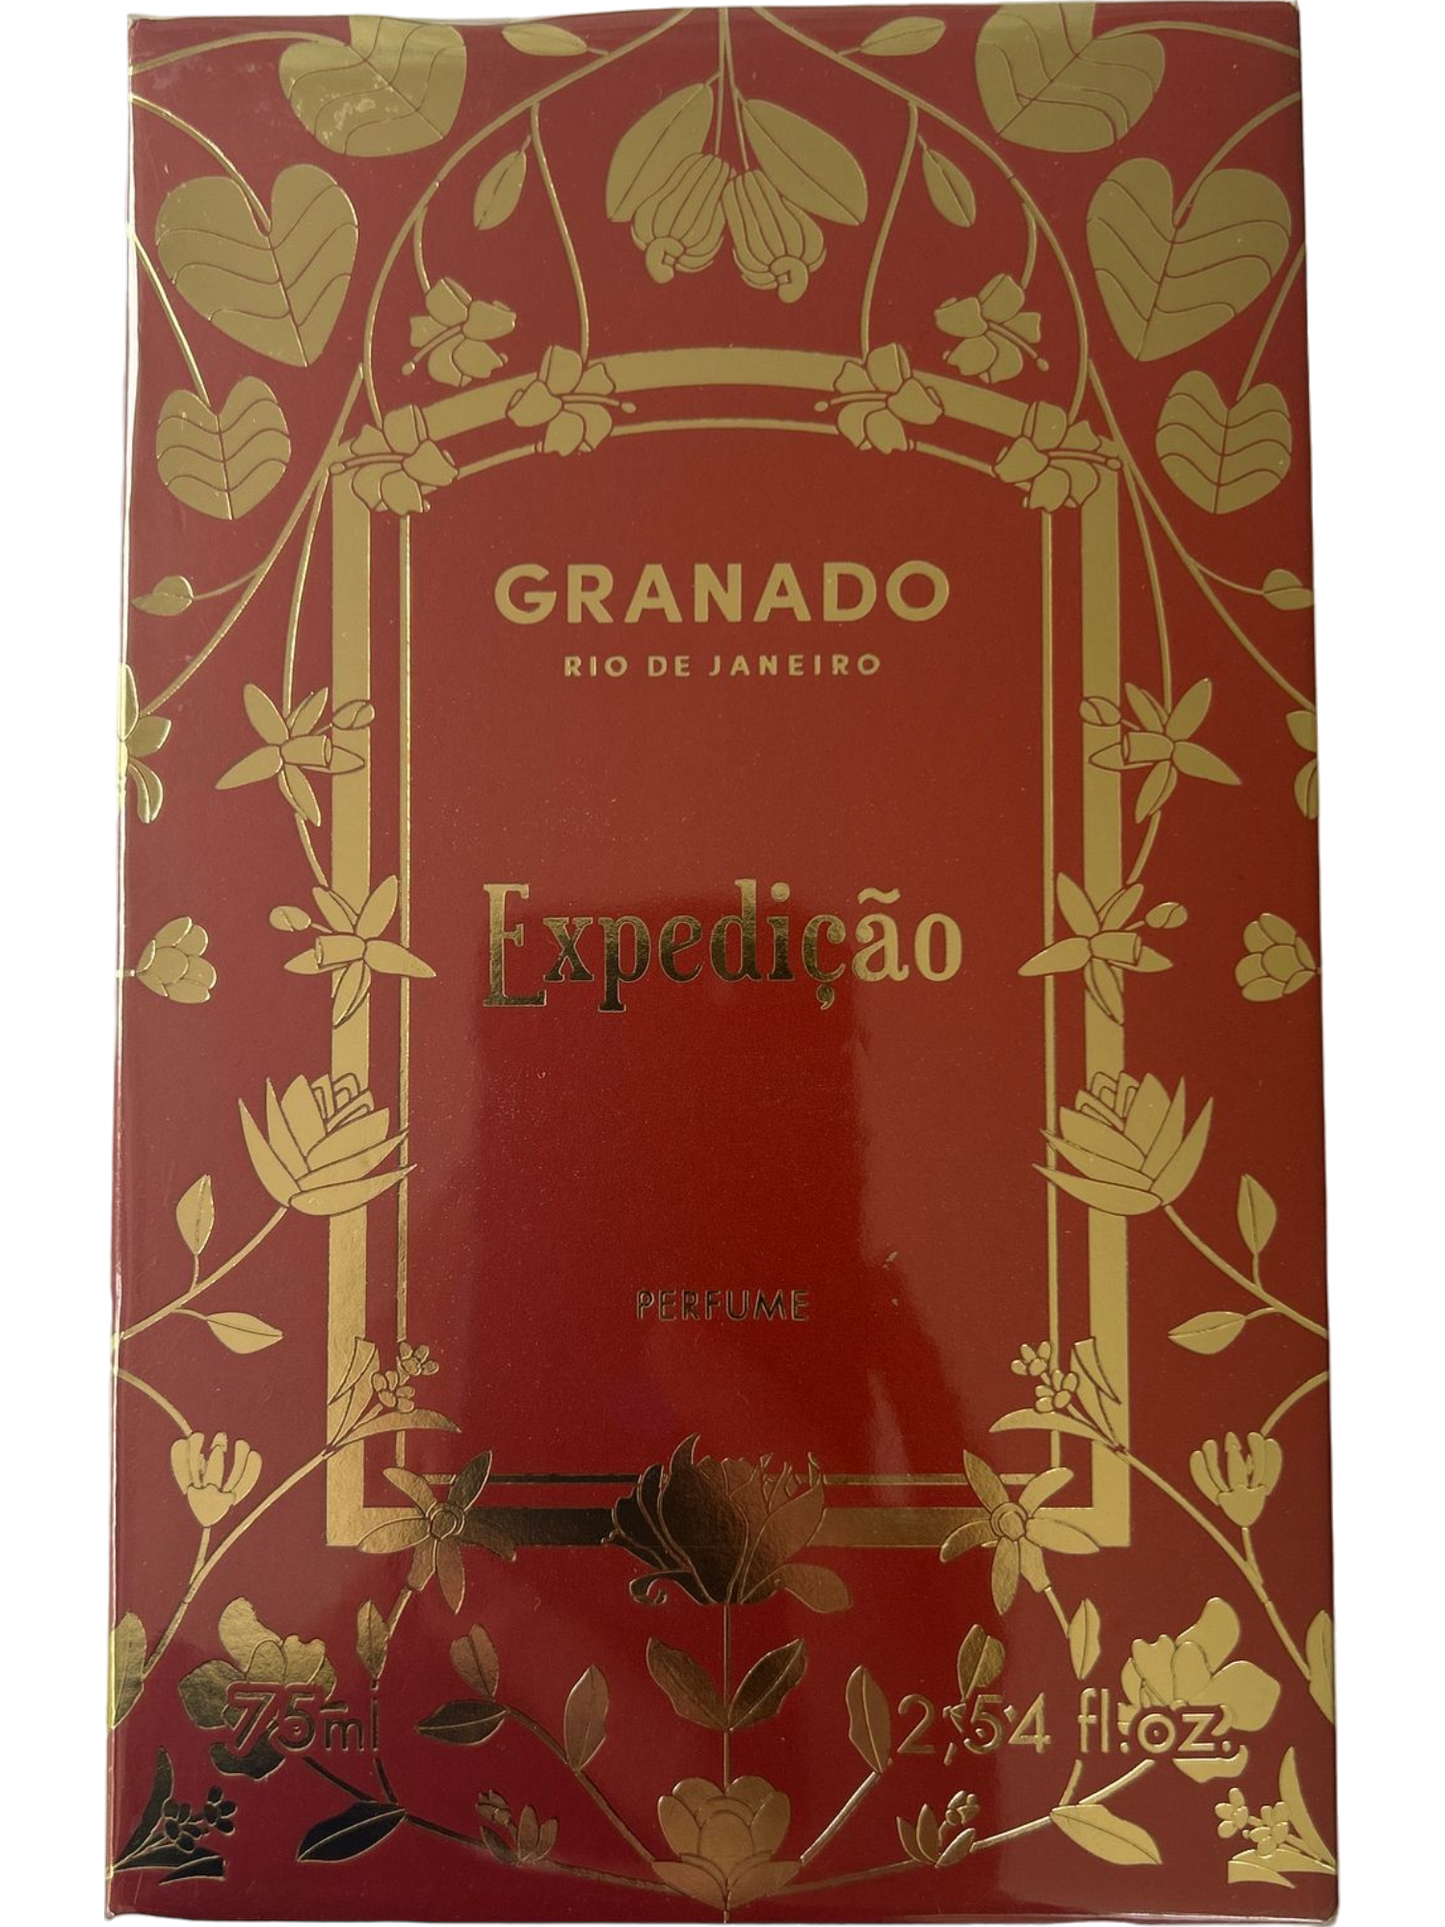 Granado Rio De Janeiro Expedicao Perfume  75ml